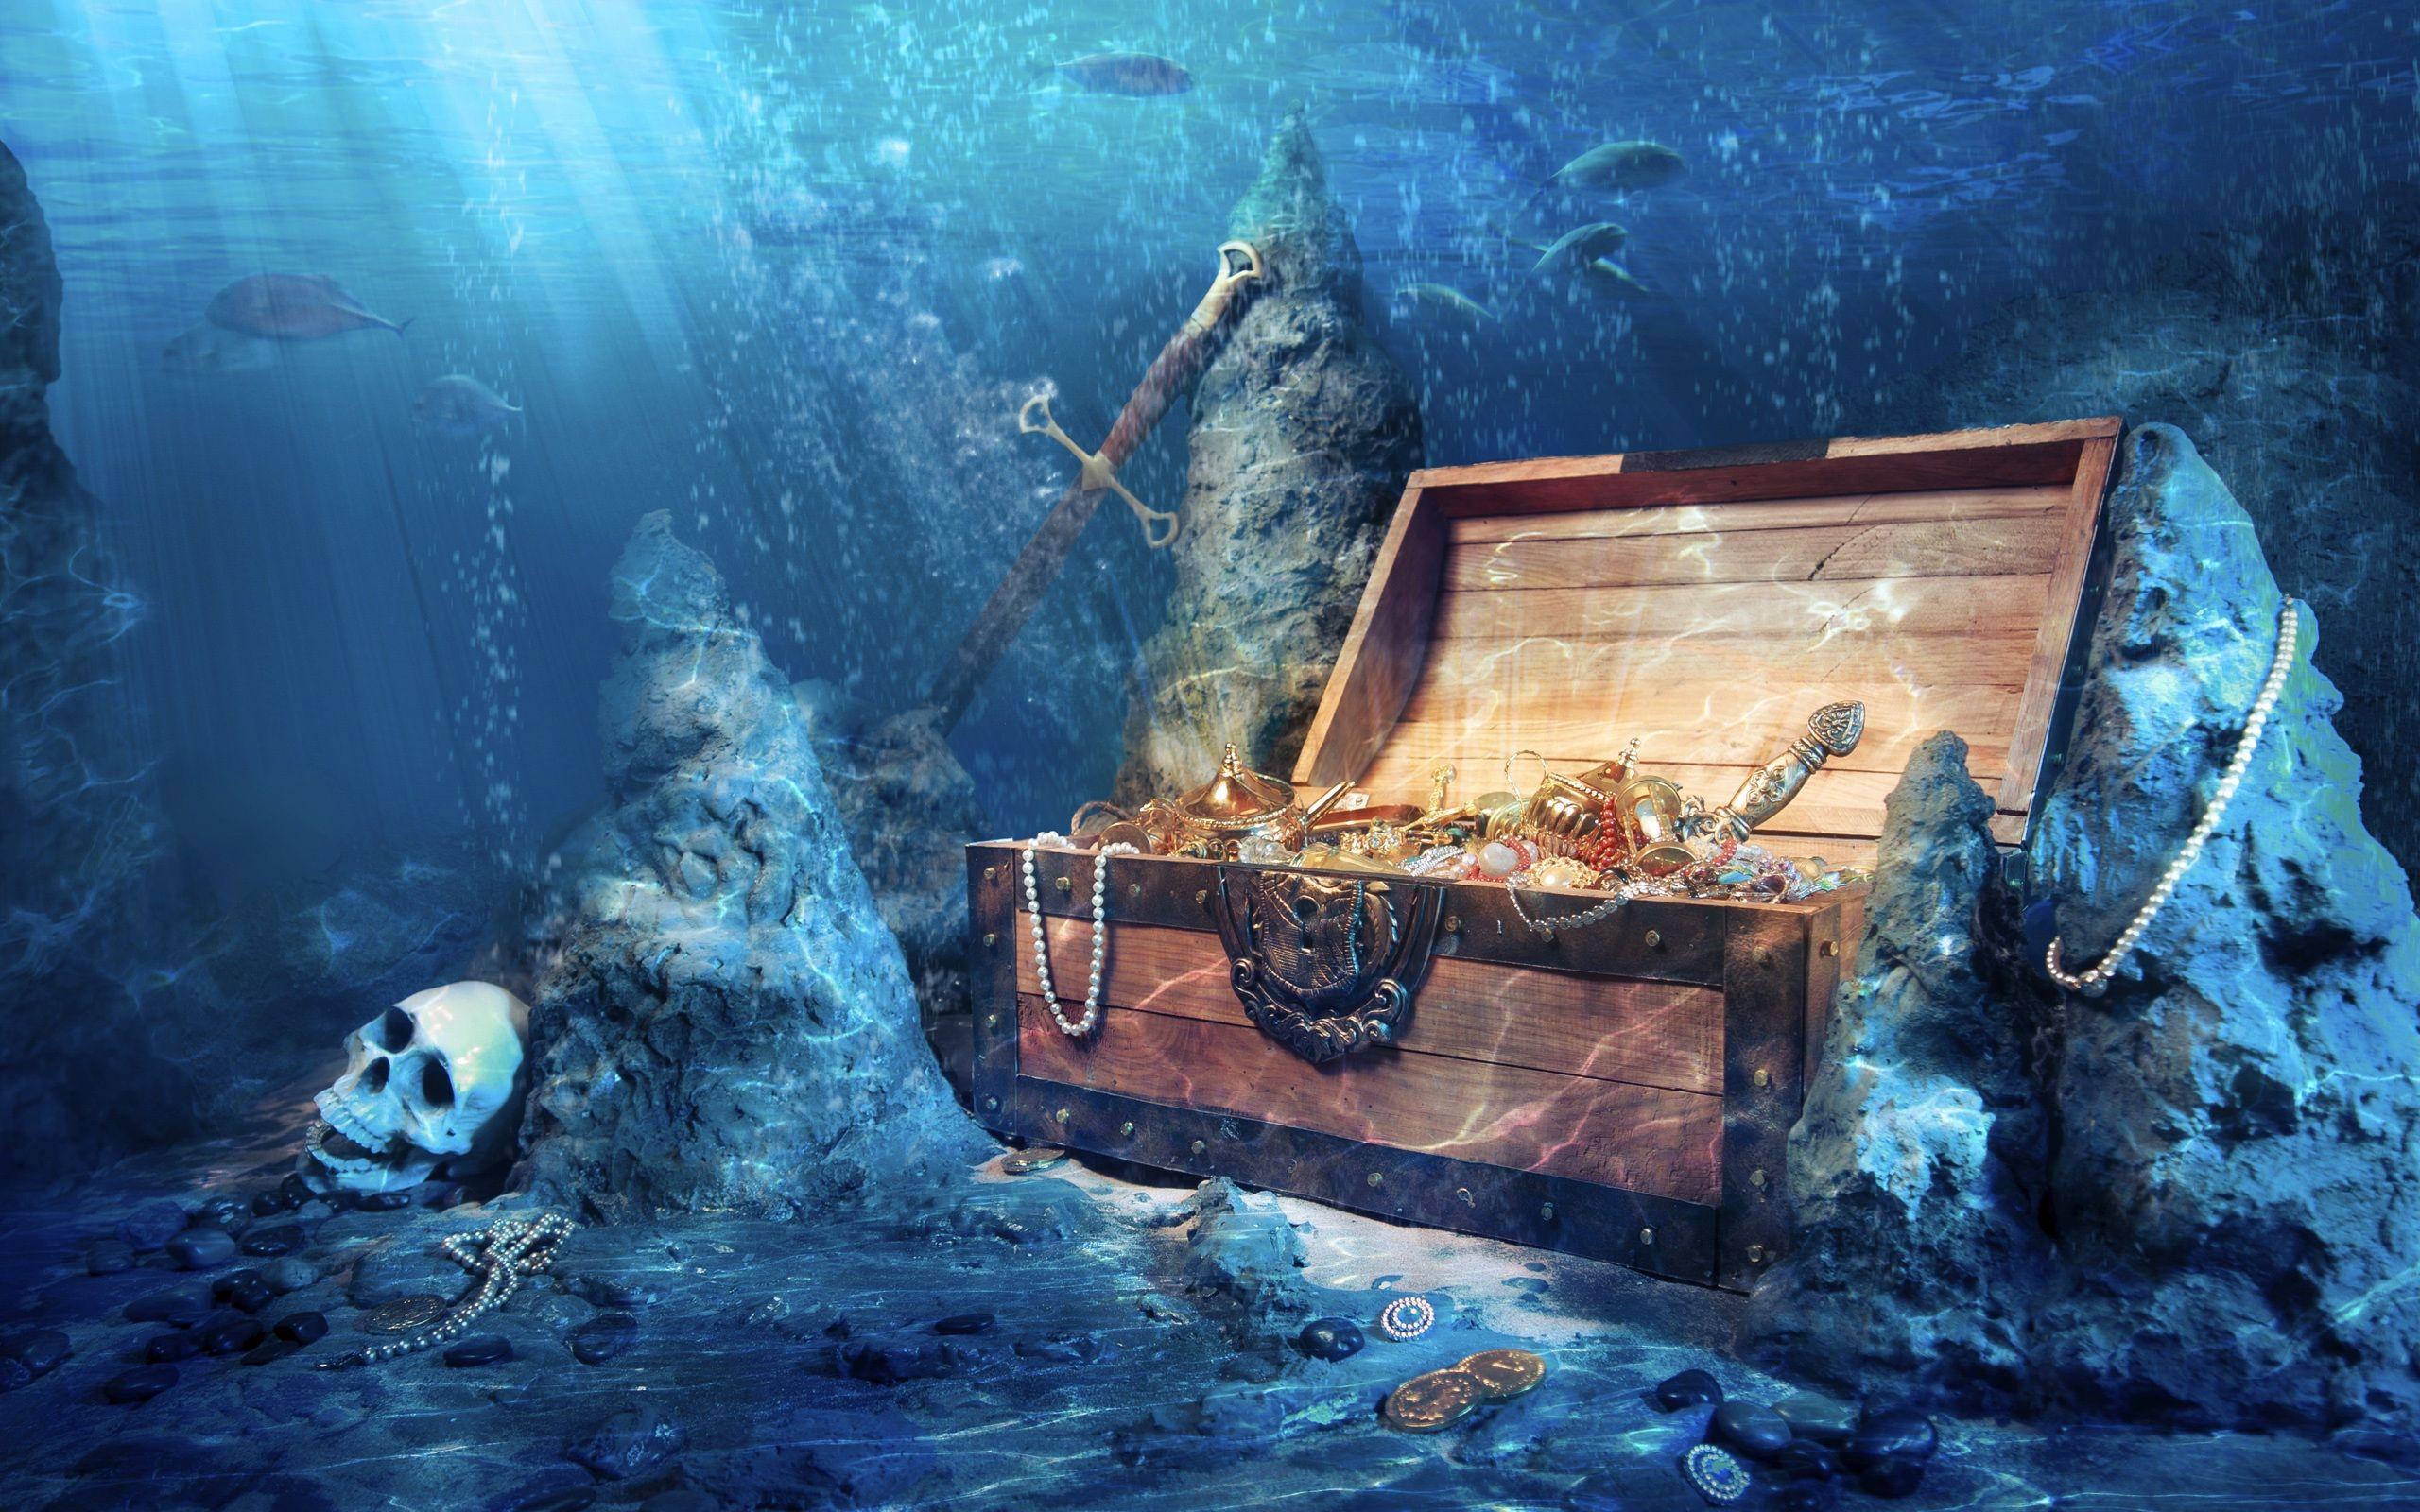 تصویر زمینه صندوقچه گنج فانتزی در اعماق دریا با طرح های باستانی رازآلود و علایم مخفی